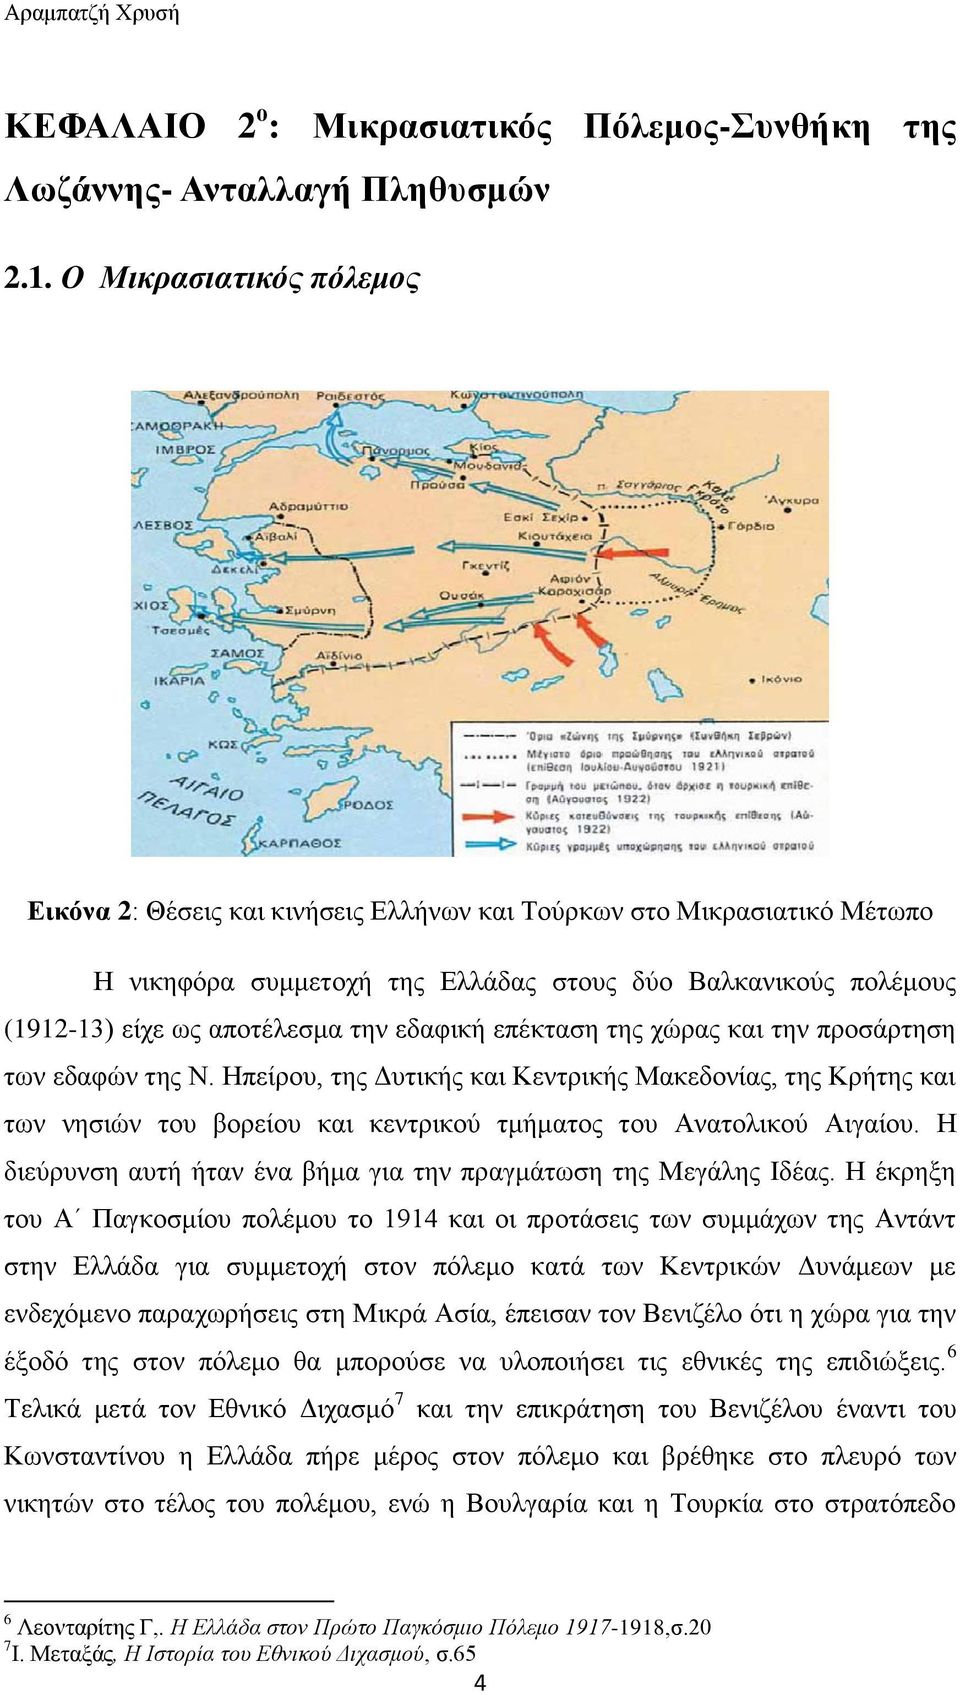 εδαφική επέκταση της χώρας και την προσάρτηση των εδαφών της Ν. Ηπείρου, της Δυτικής και Κεντρικής Μακεδονίας, της Κρήτης και των νησιών του βορείου και κεντρικού τμήματος του Ανατολικού Αιγαίου.